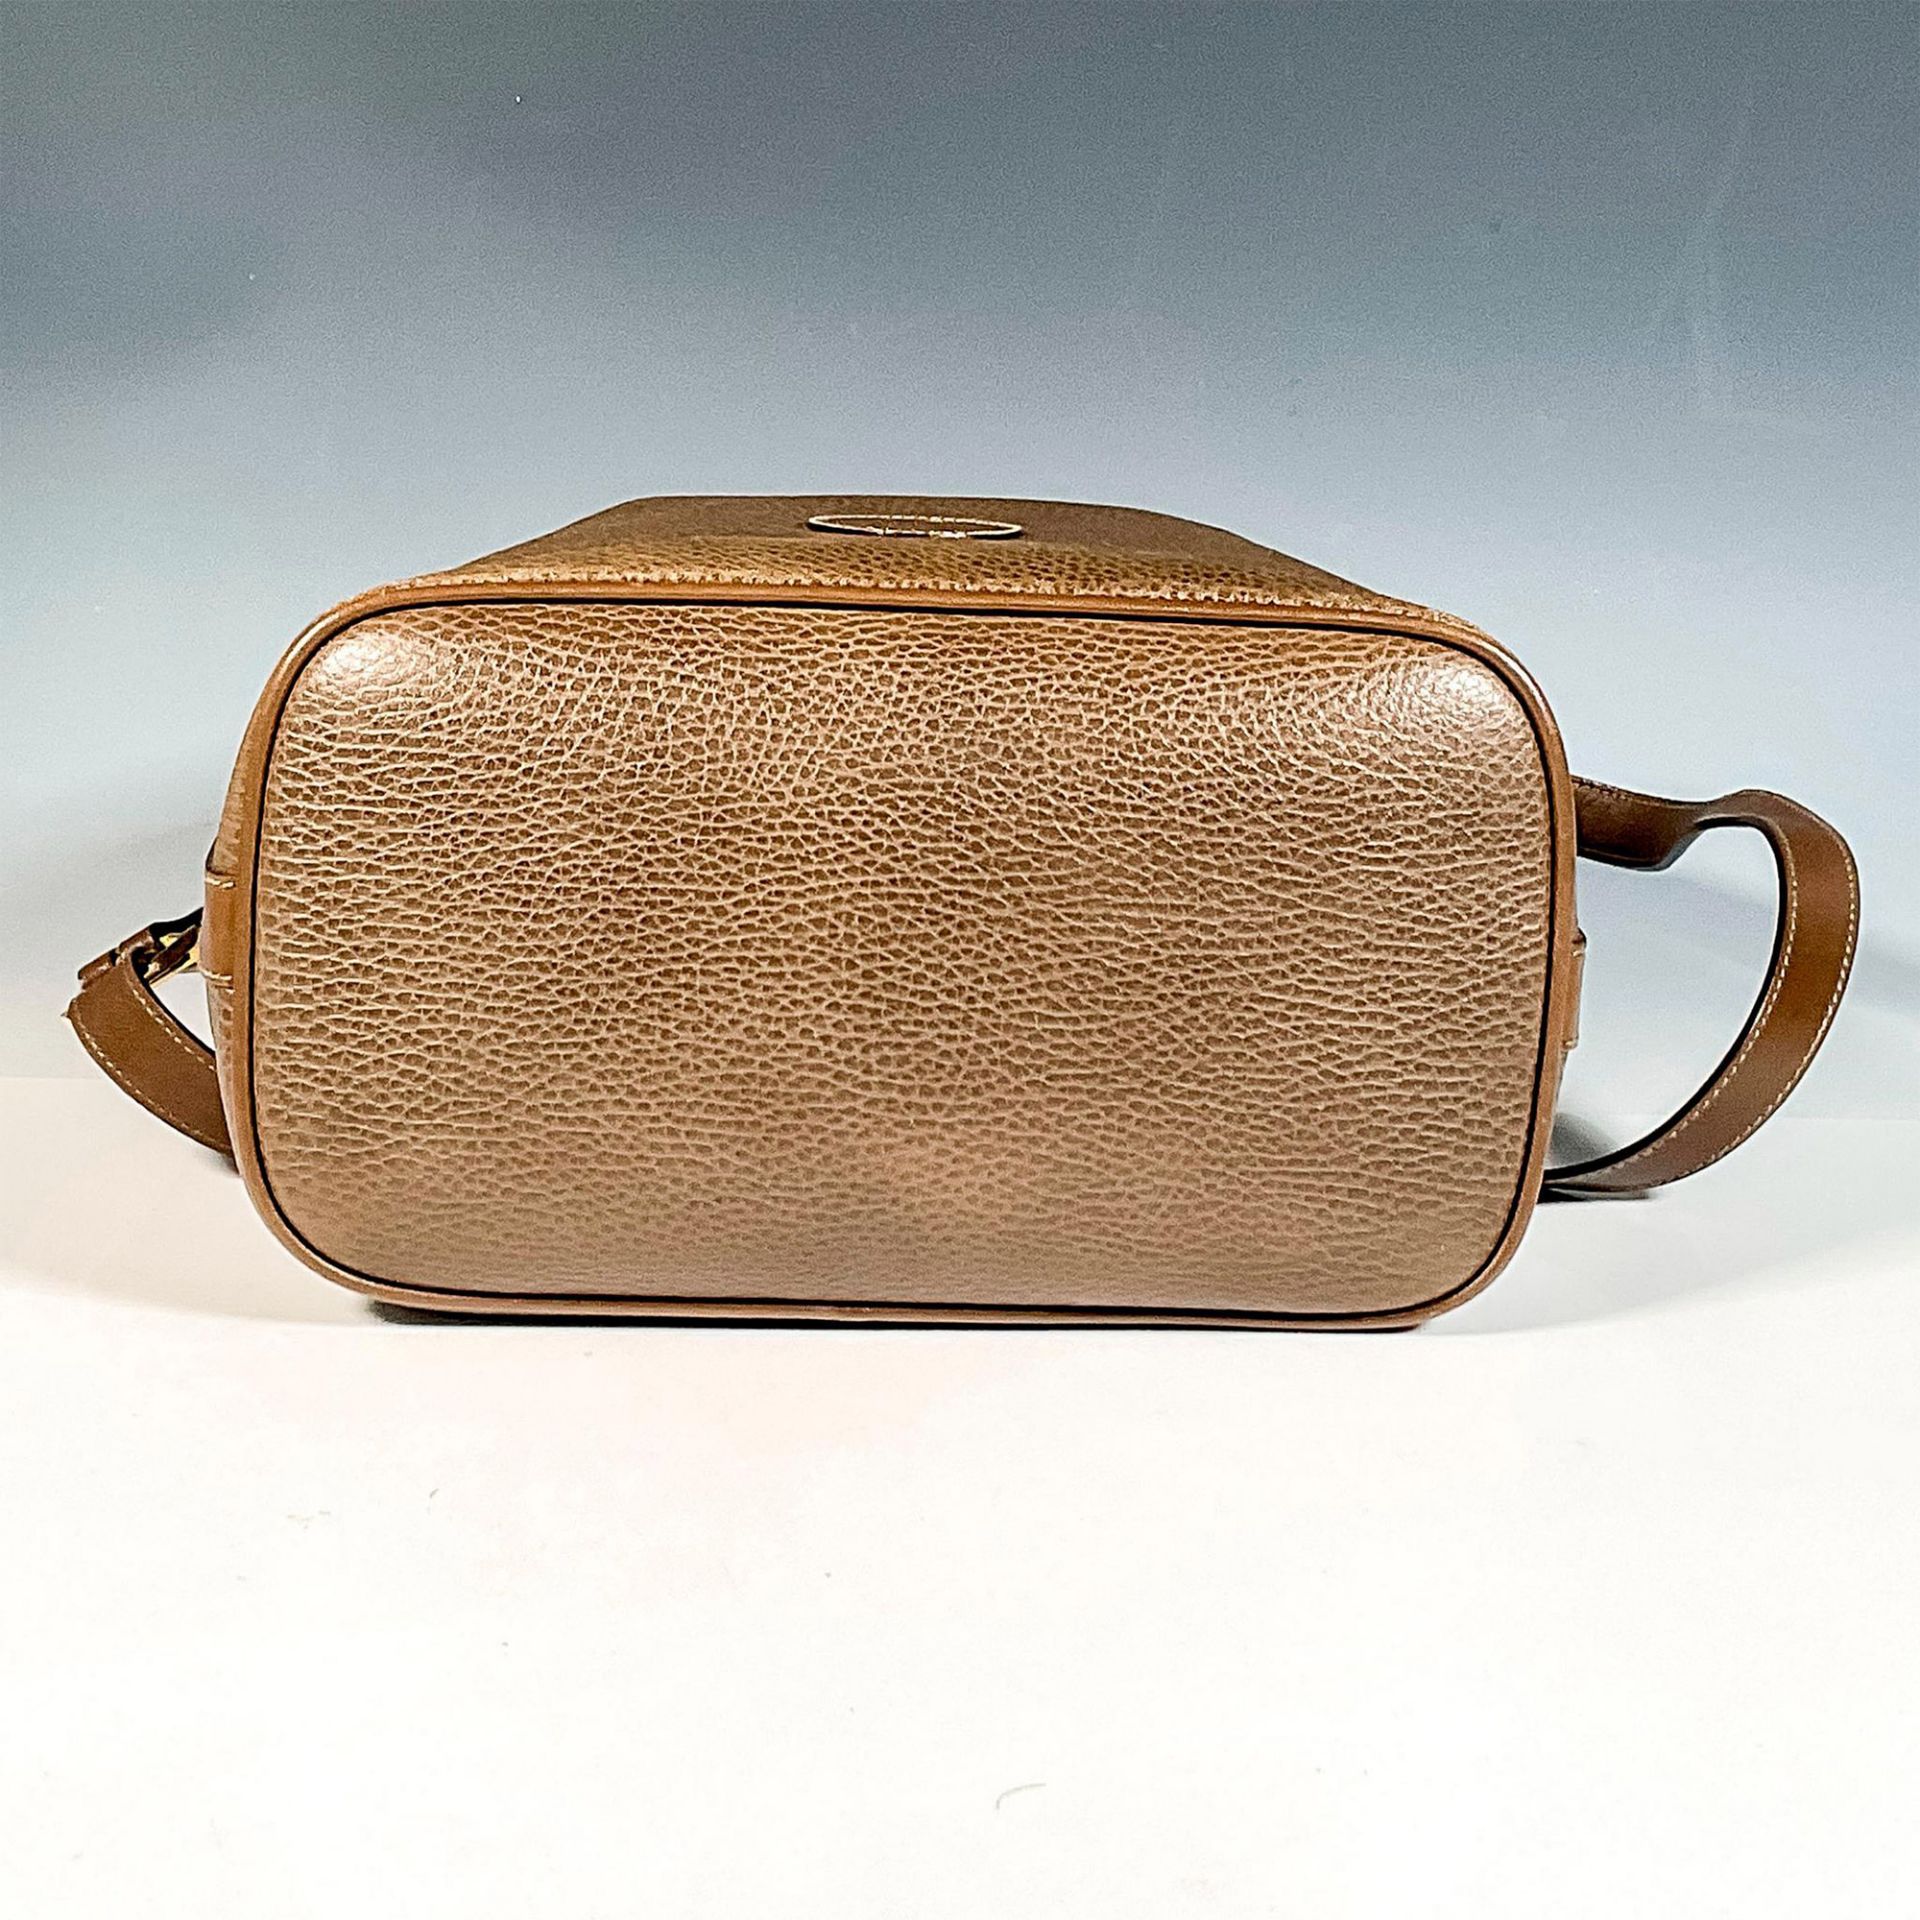 Mark Cross Brown Leather Handbag - Image 4 of 6